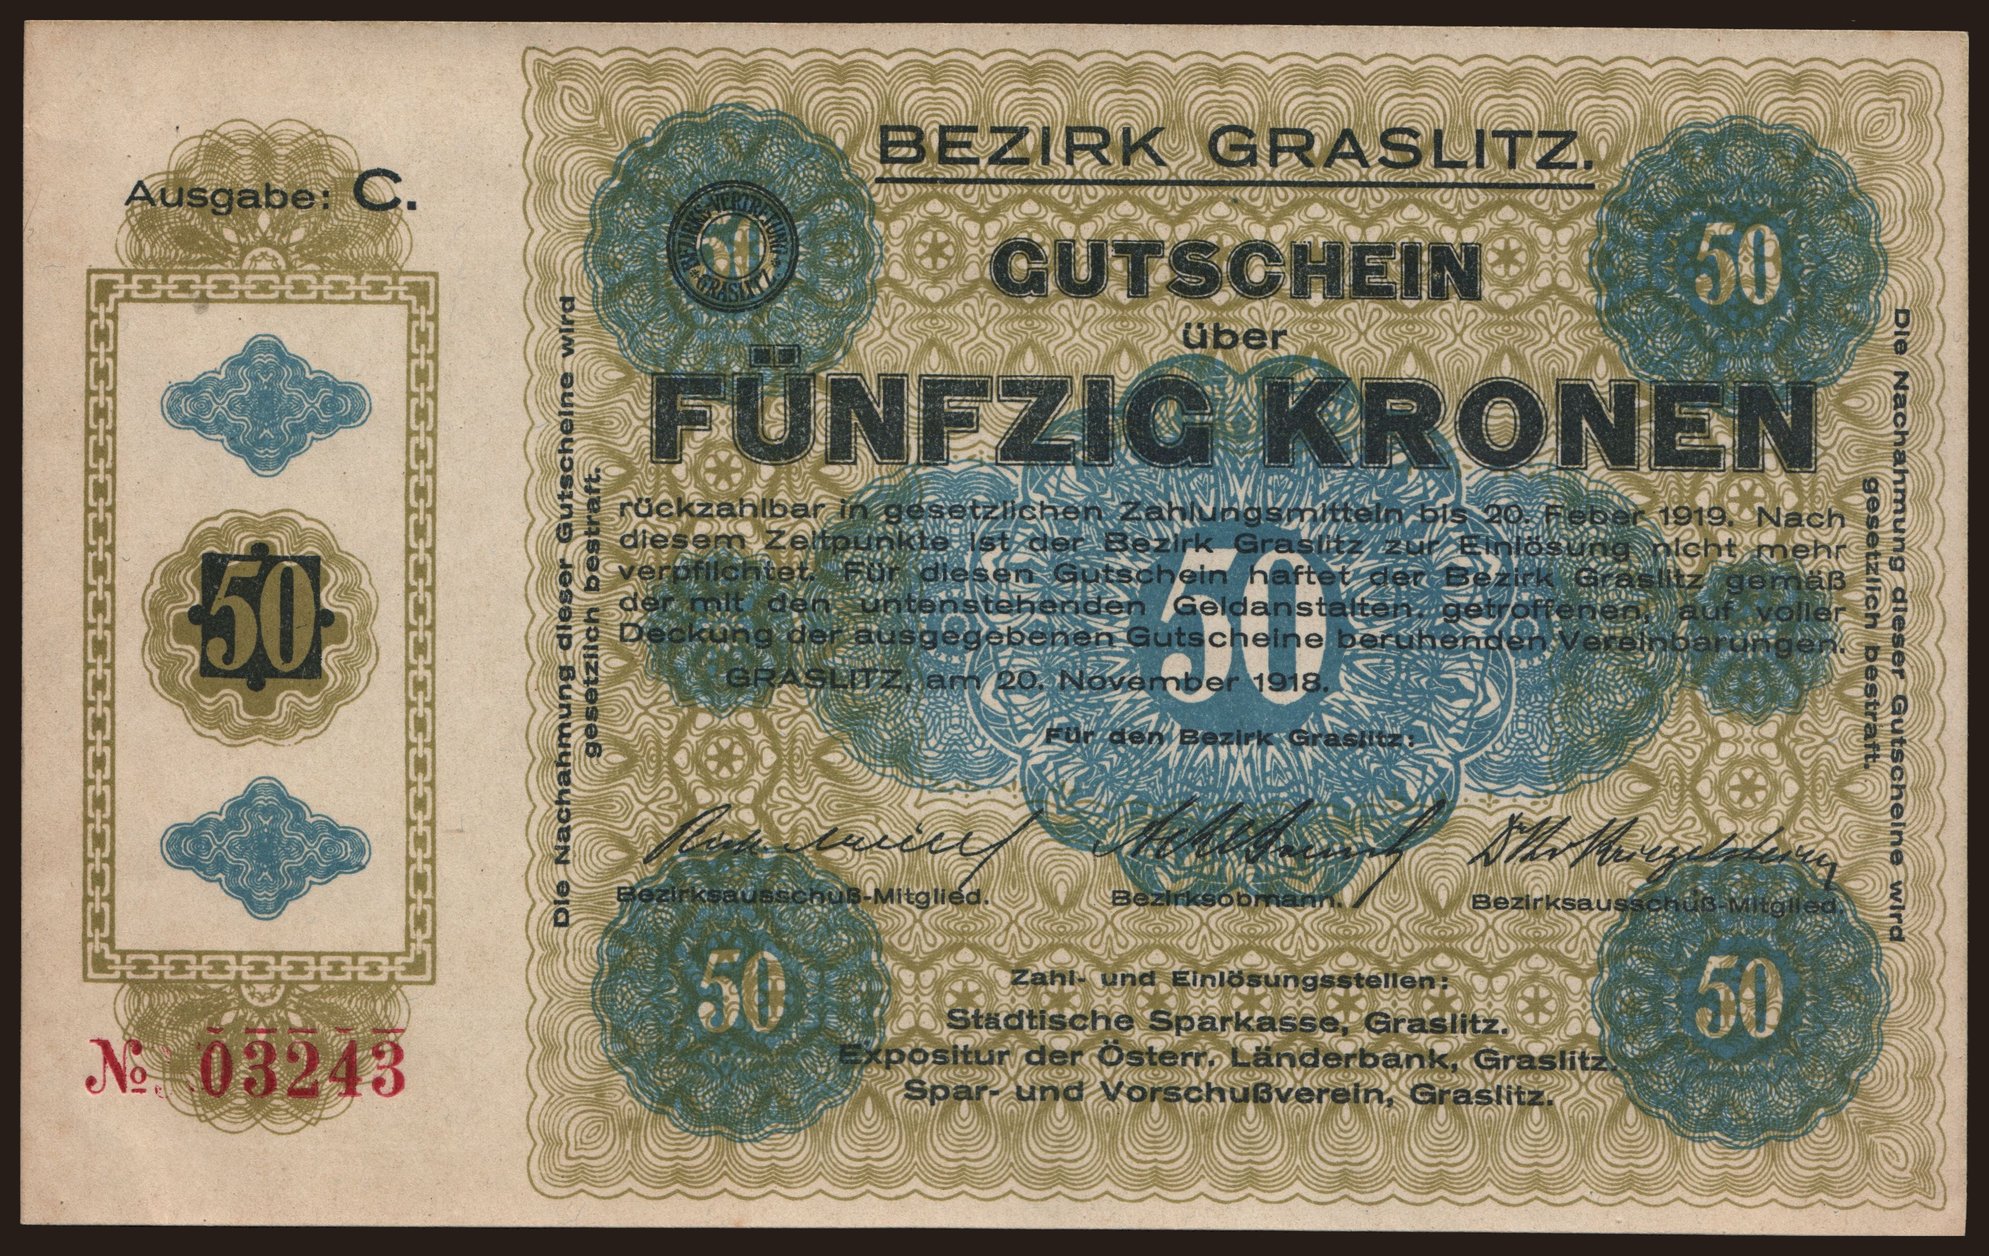 Graslitz, 50 Kronen, 1918